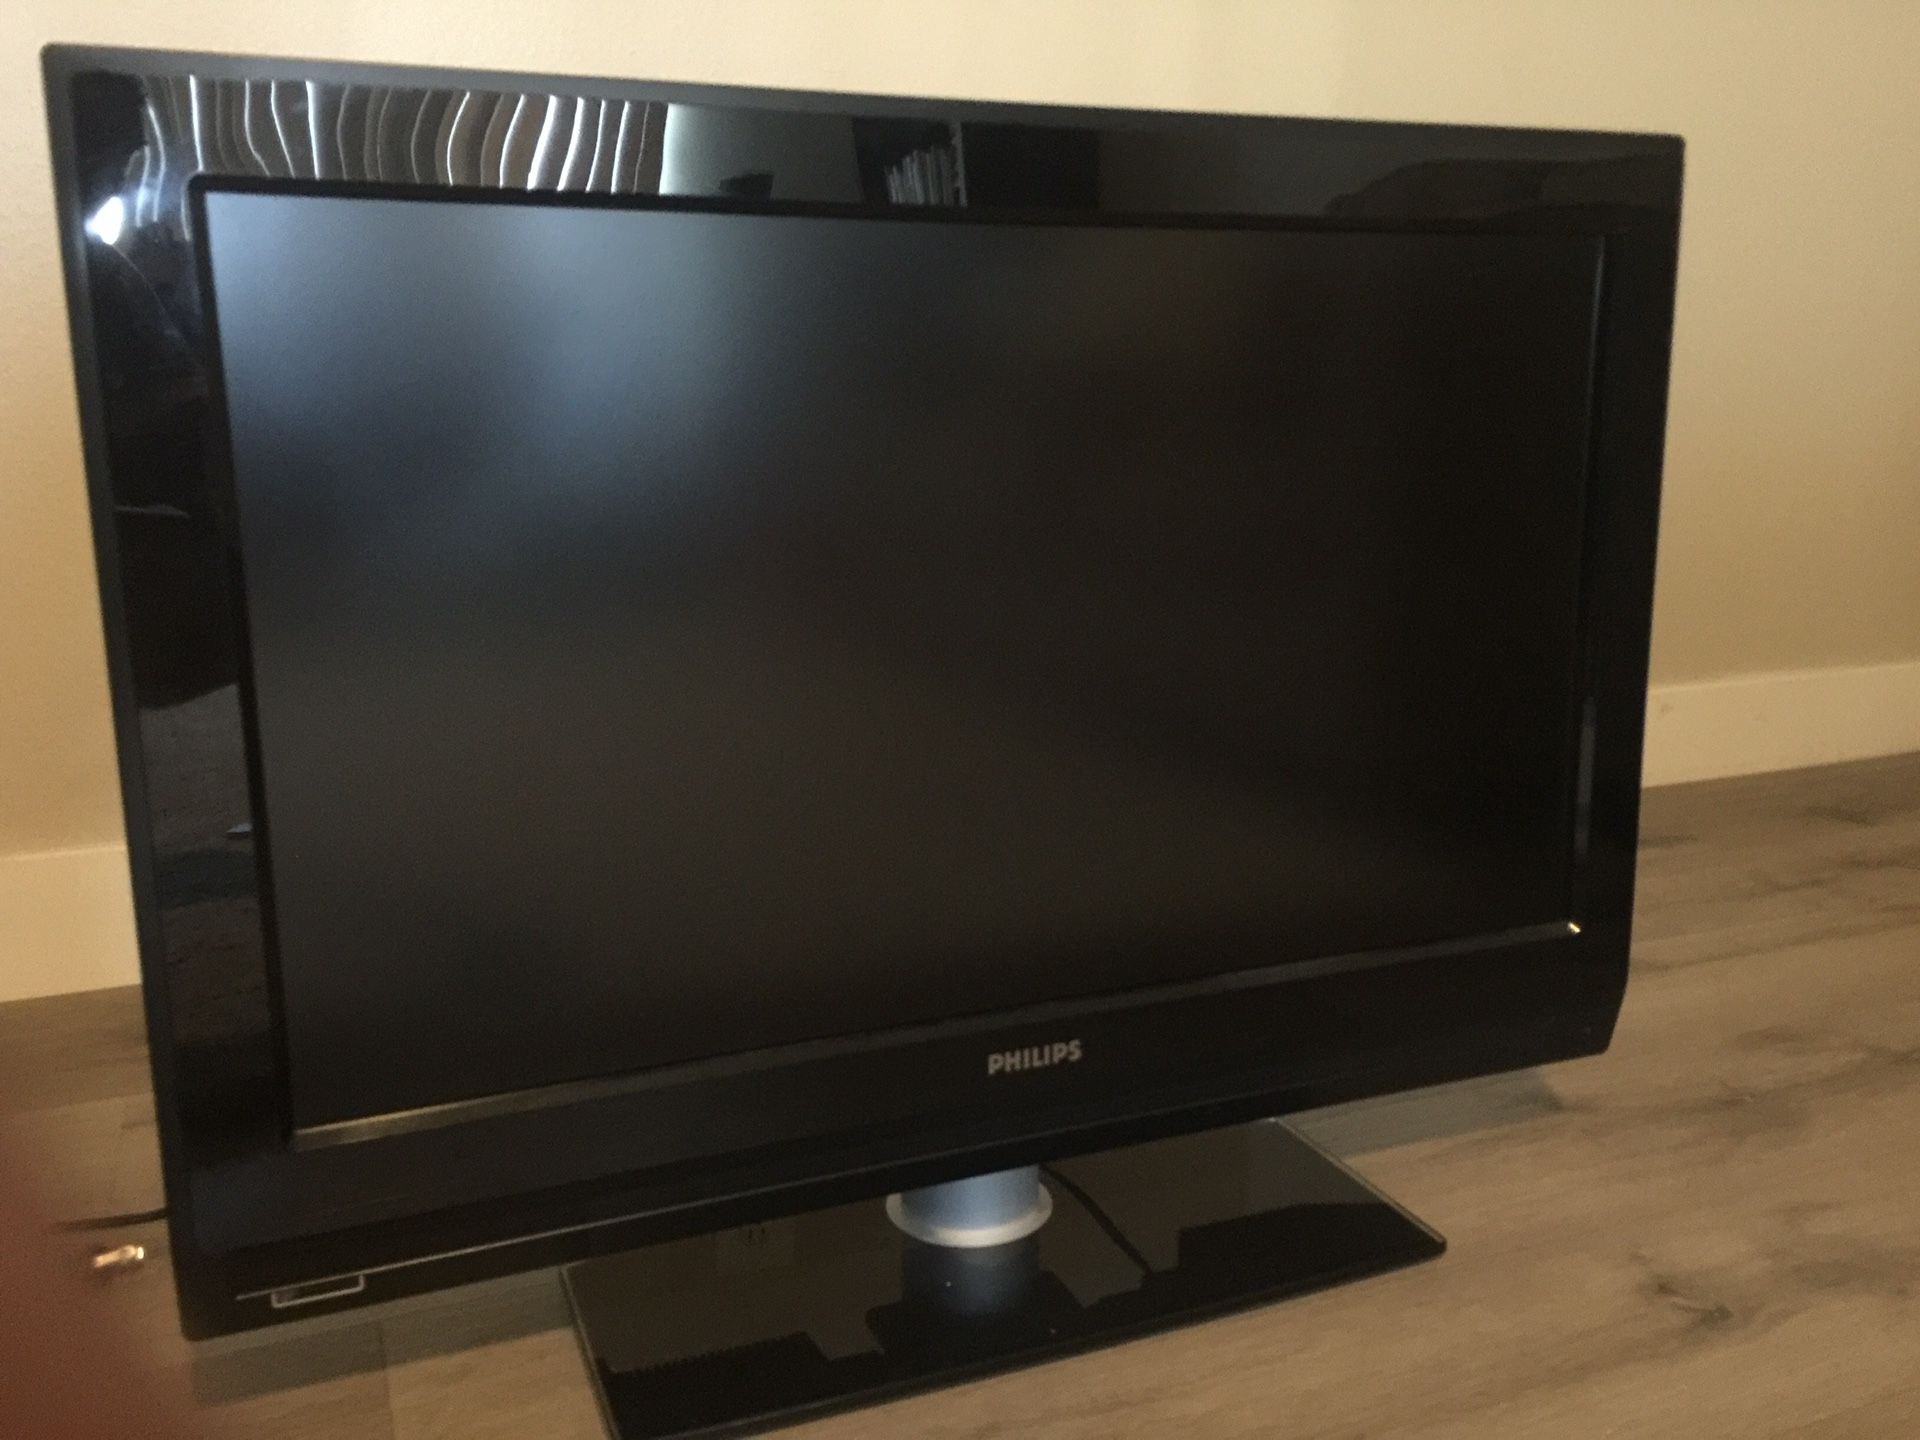 Philips 32in digital widescreen flat TV